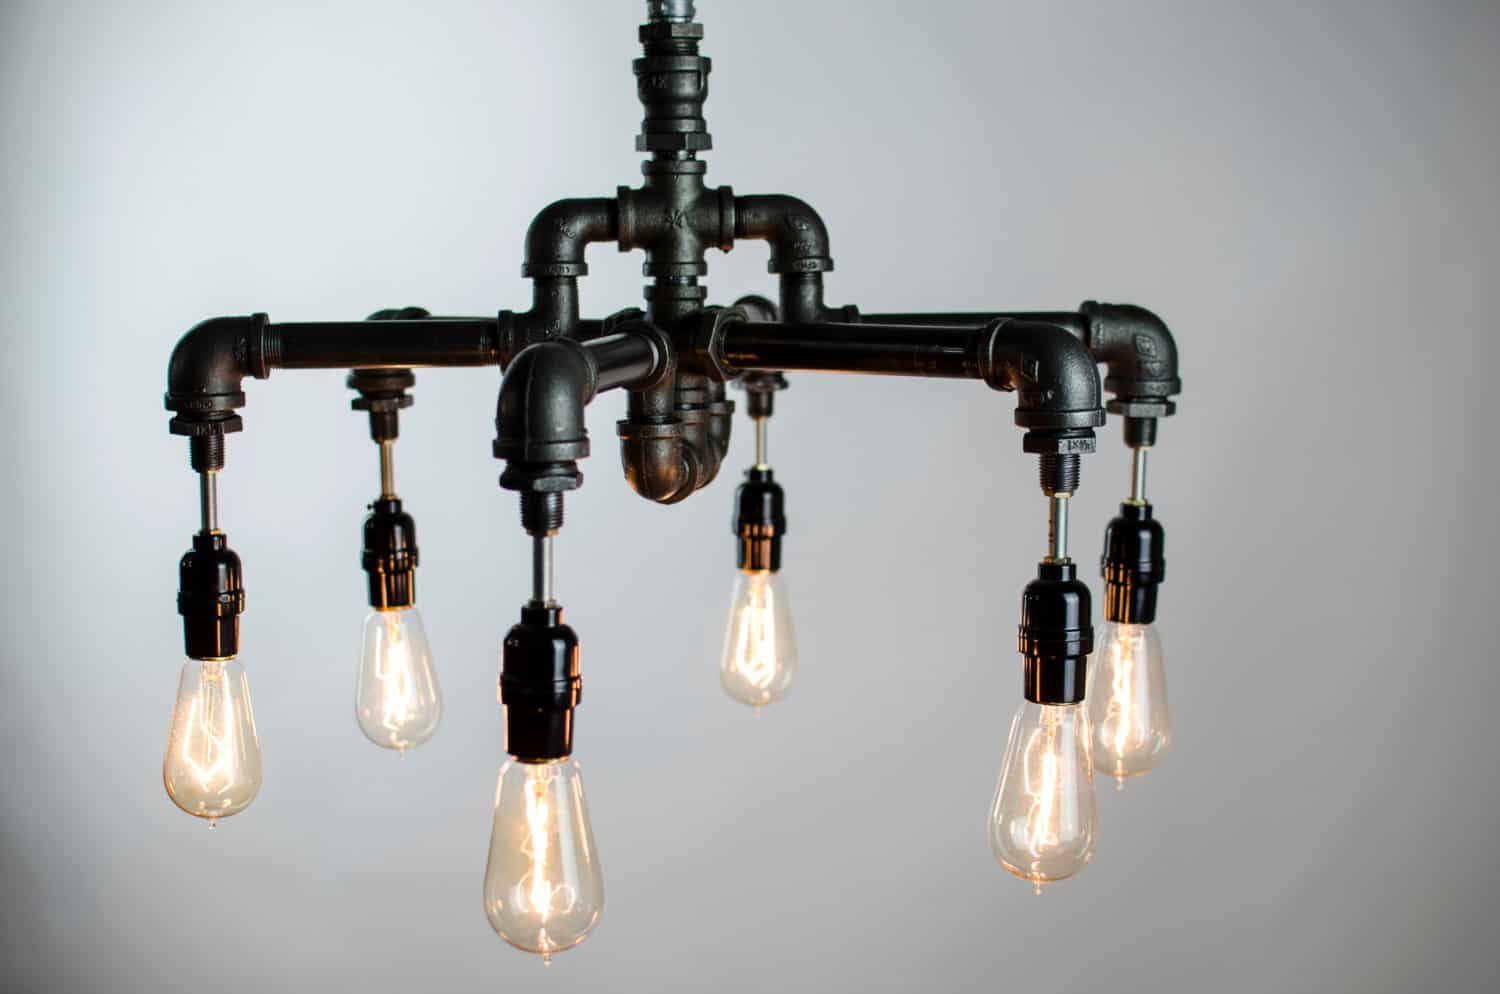 plumbing-pipe-lighting-fixtures-gorgeous-chandelier-8a.jpg